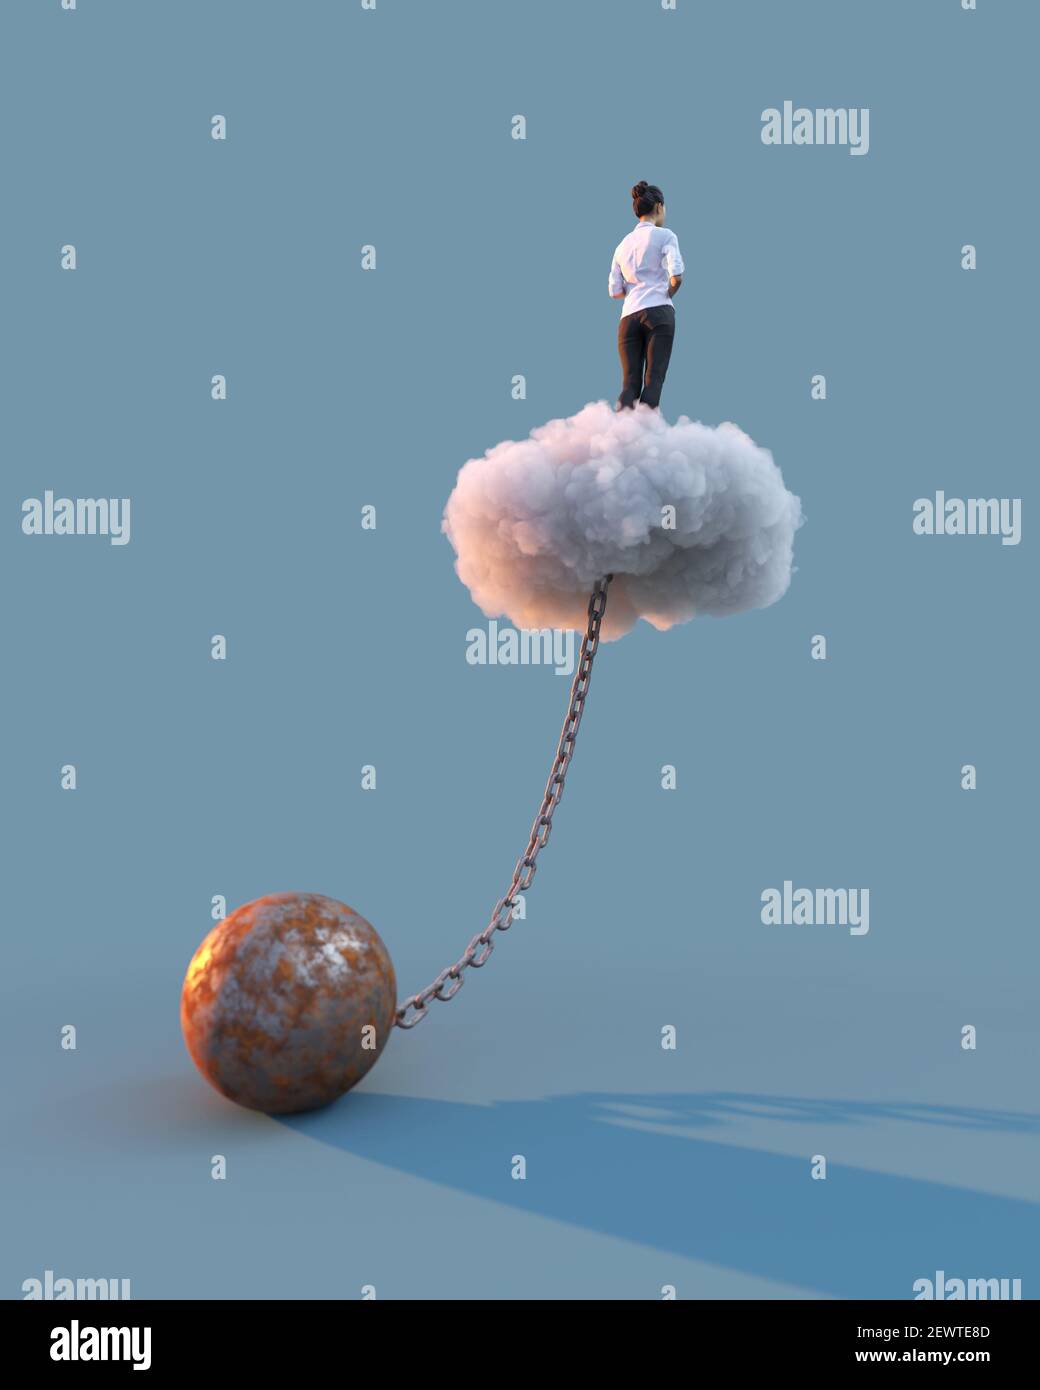 donna in piedi su una nuvola incatenata a un peso Foto Stock